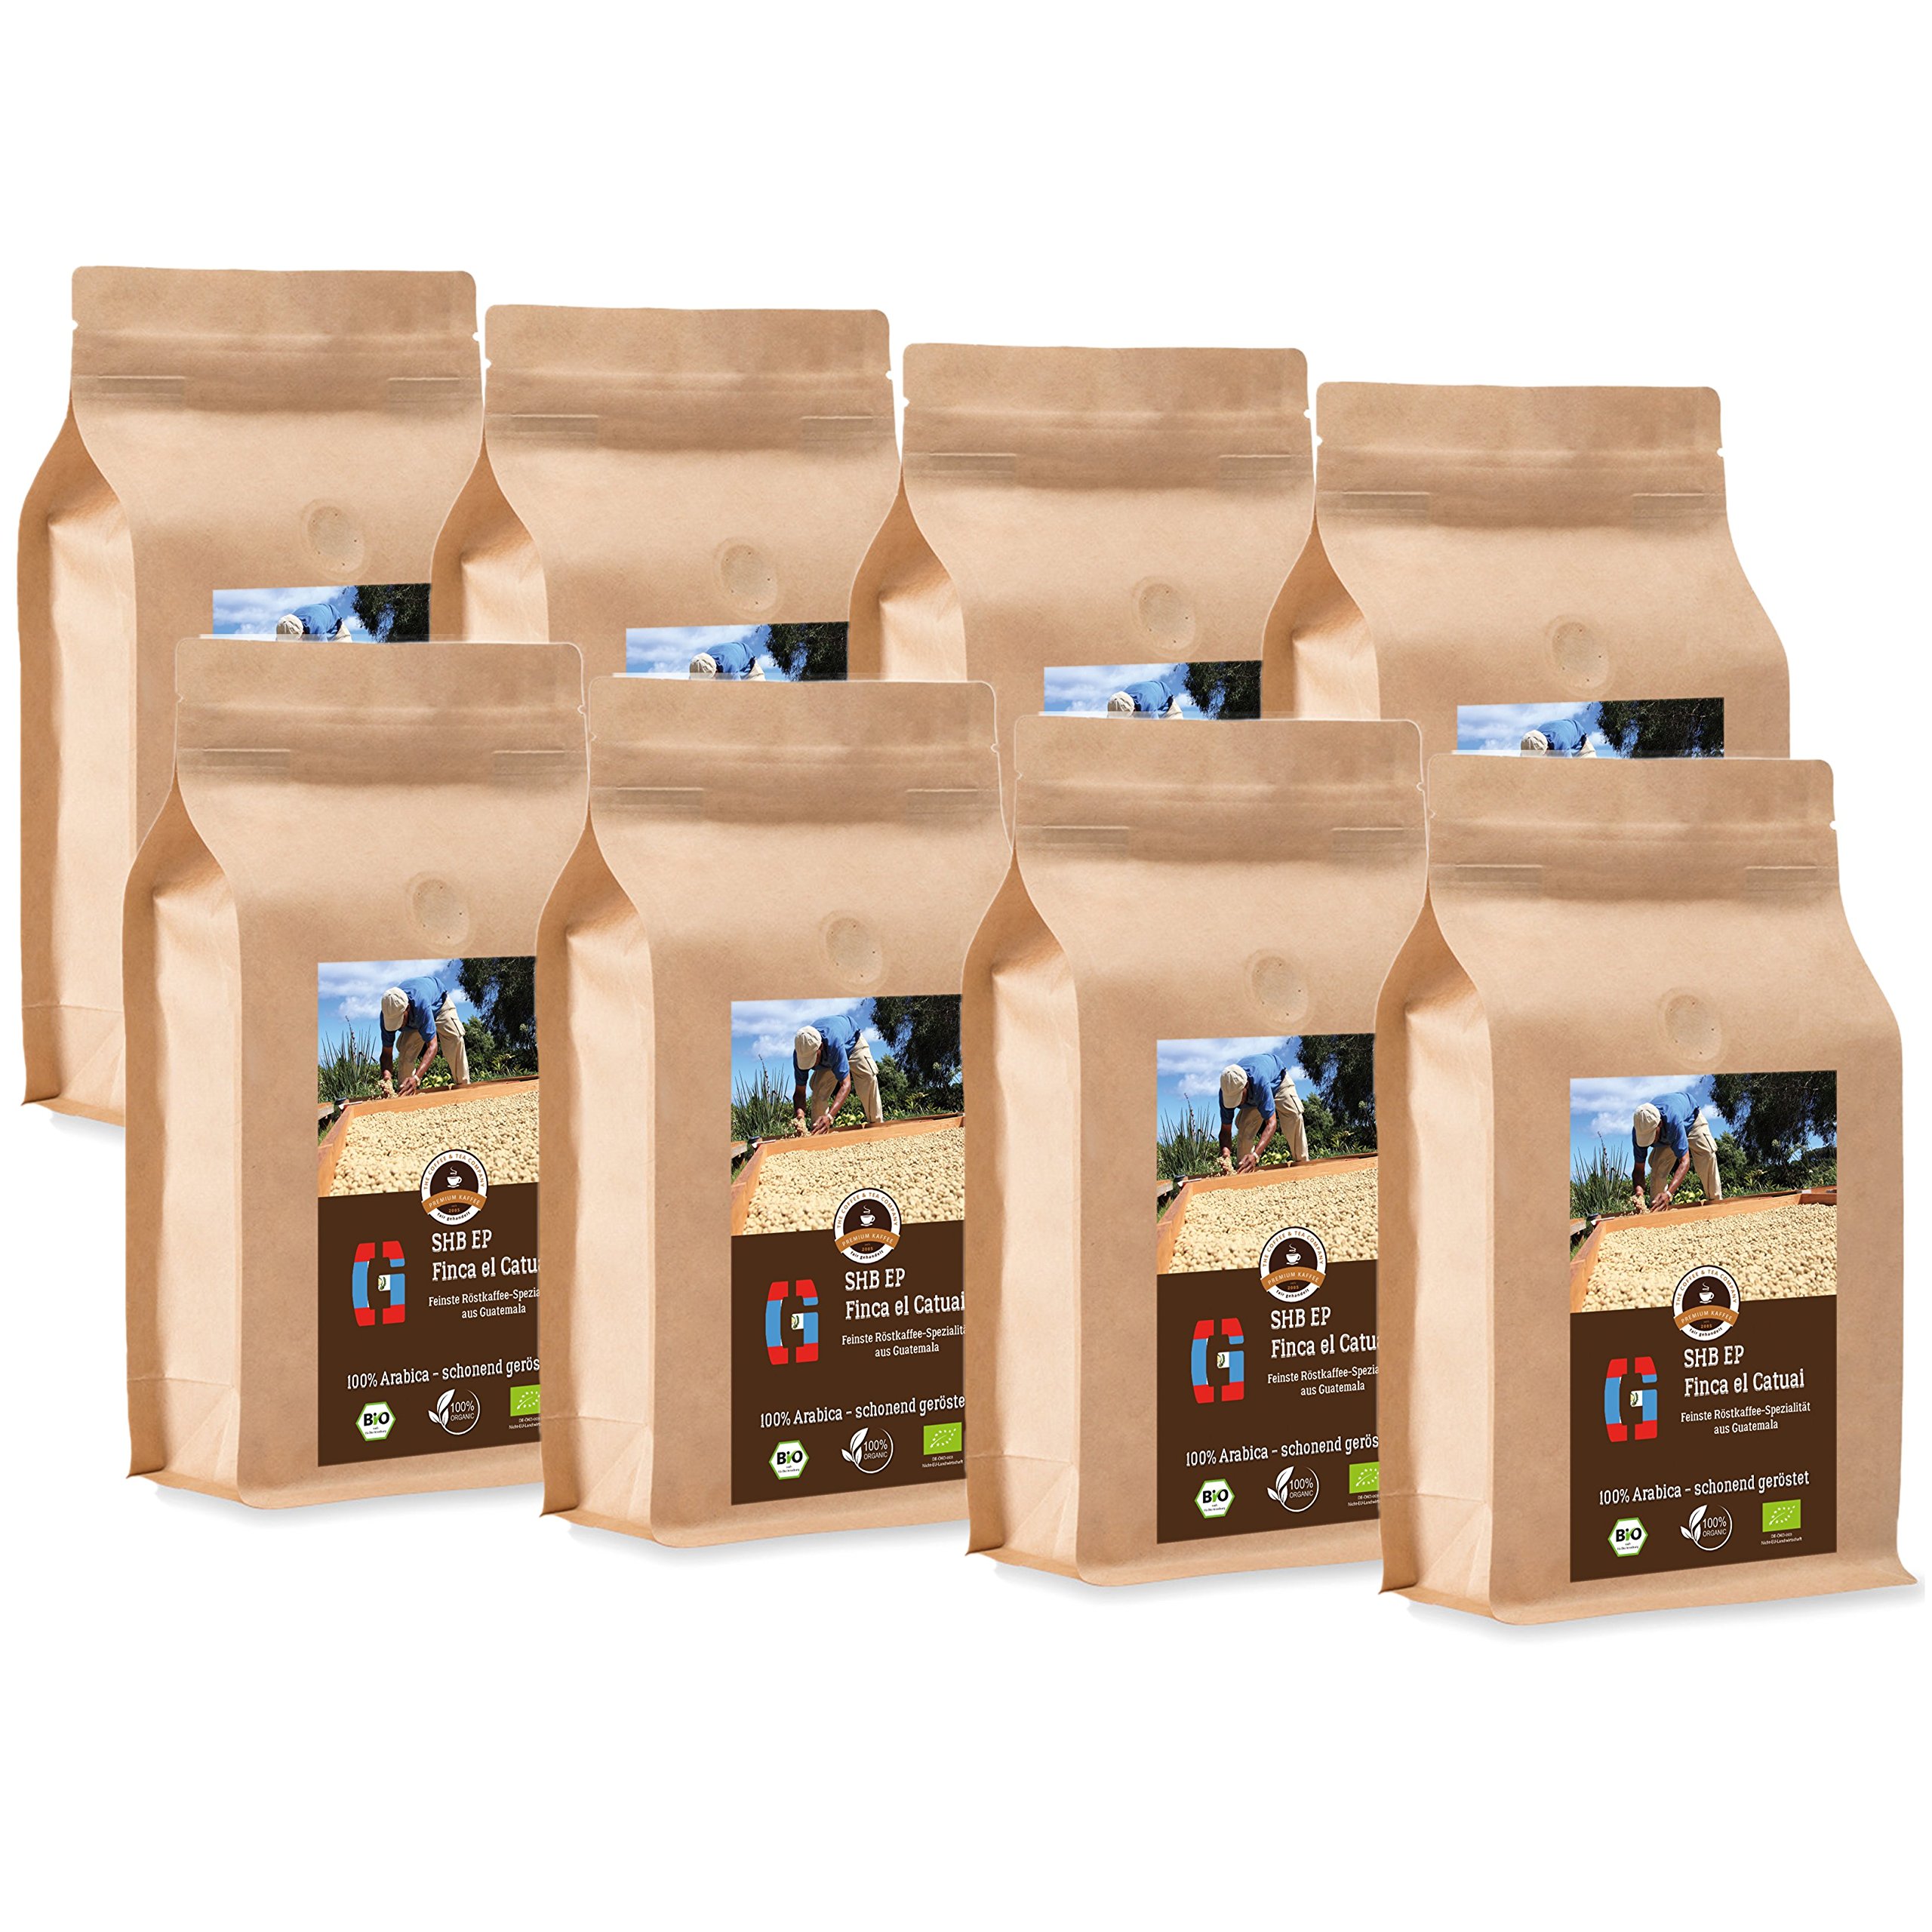 Kaffee Globetrotter - Bio Guatemala SHB EP Finca El Catuai - 8 x 1000 g Mittel Gemahlen - für Kaffee-Vollautomat, Kaffeemühle - Röstkaffee aus biologischem Anbau | Gastropack Sparpack